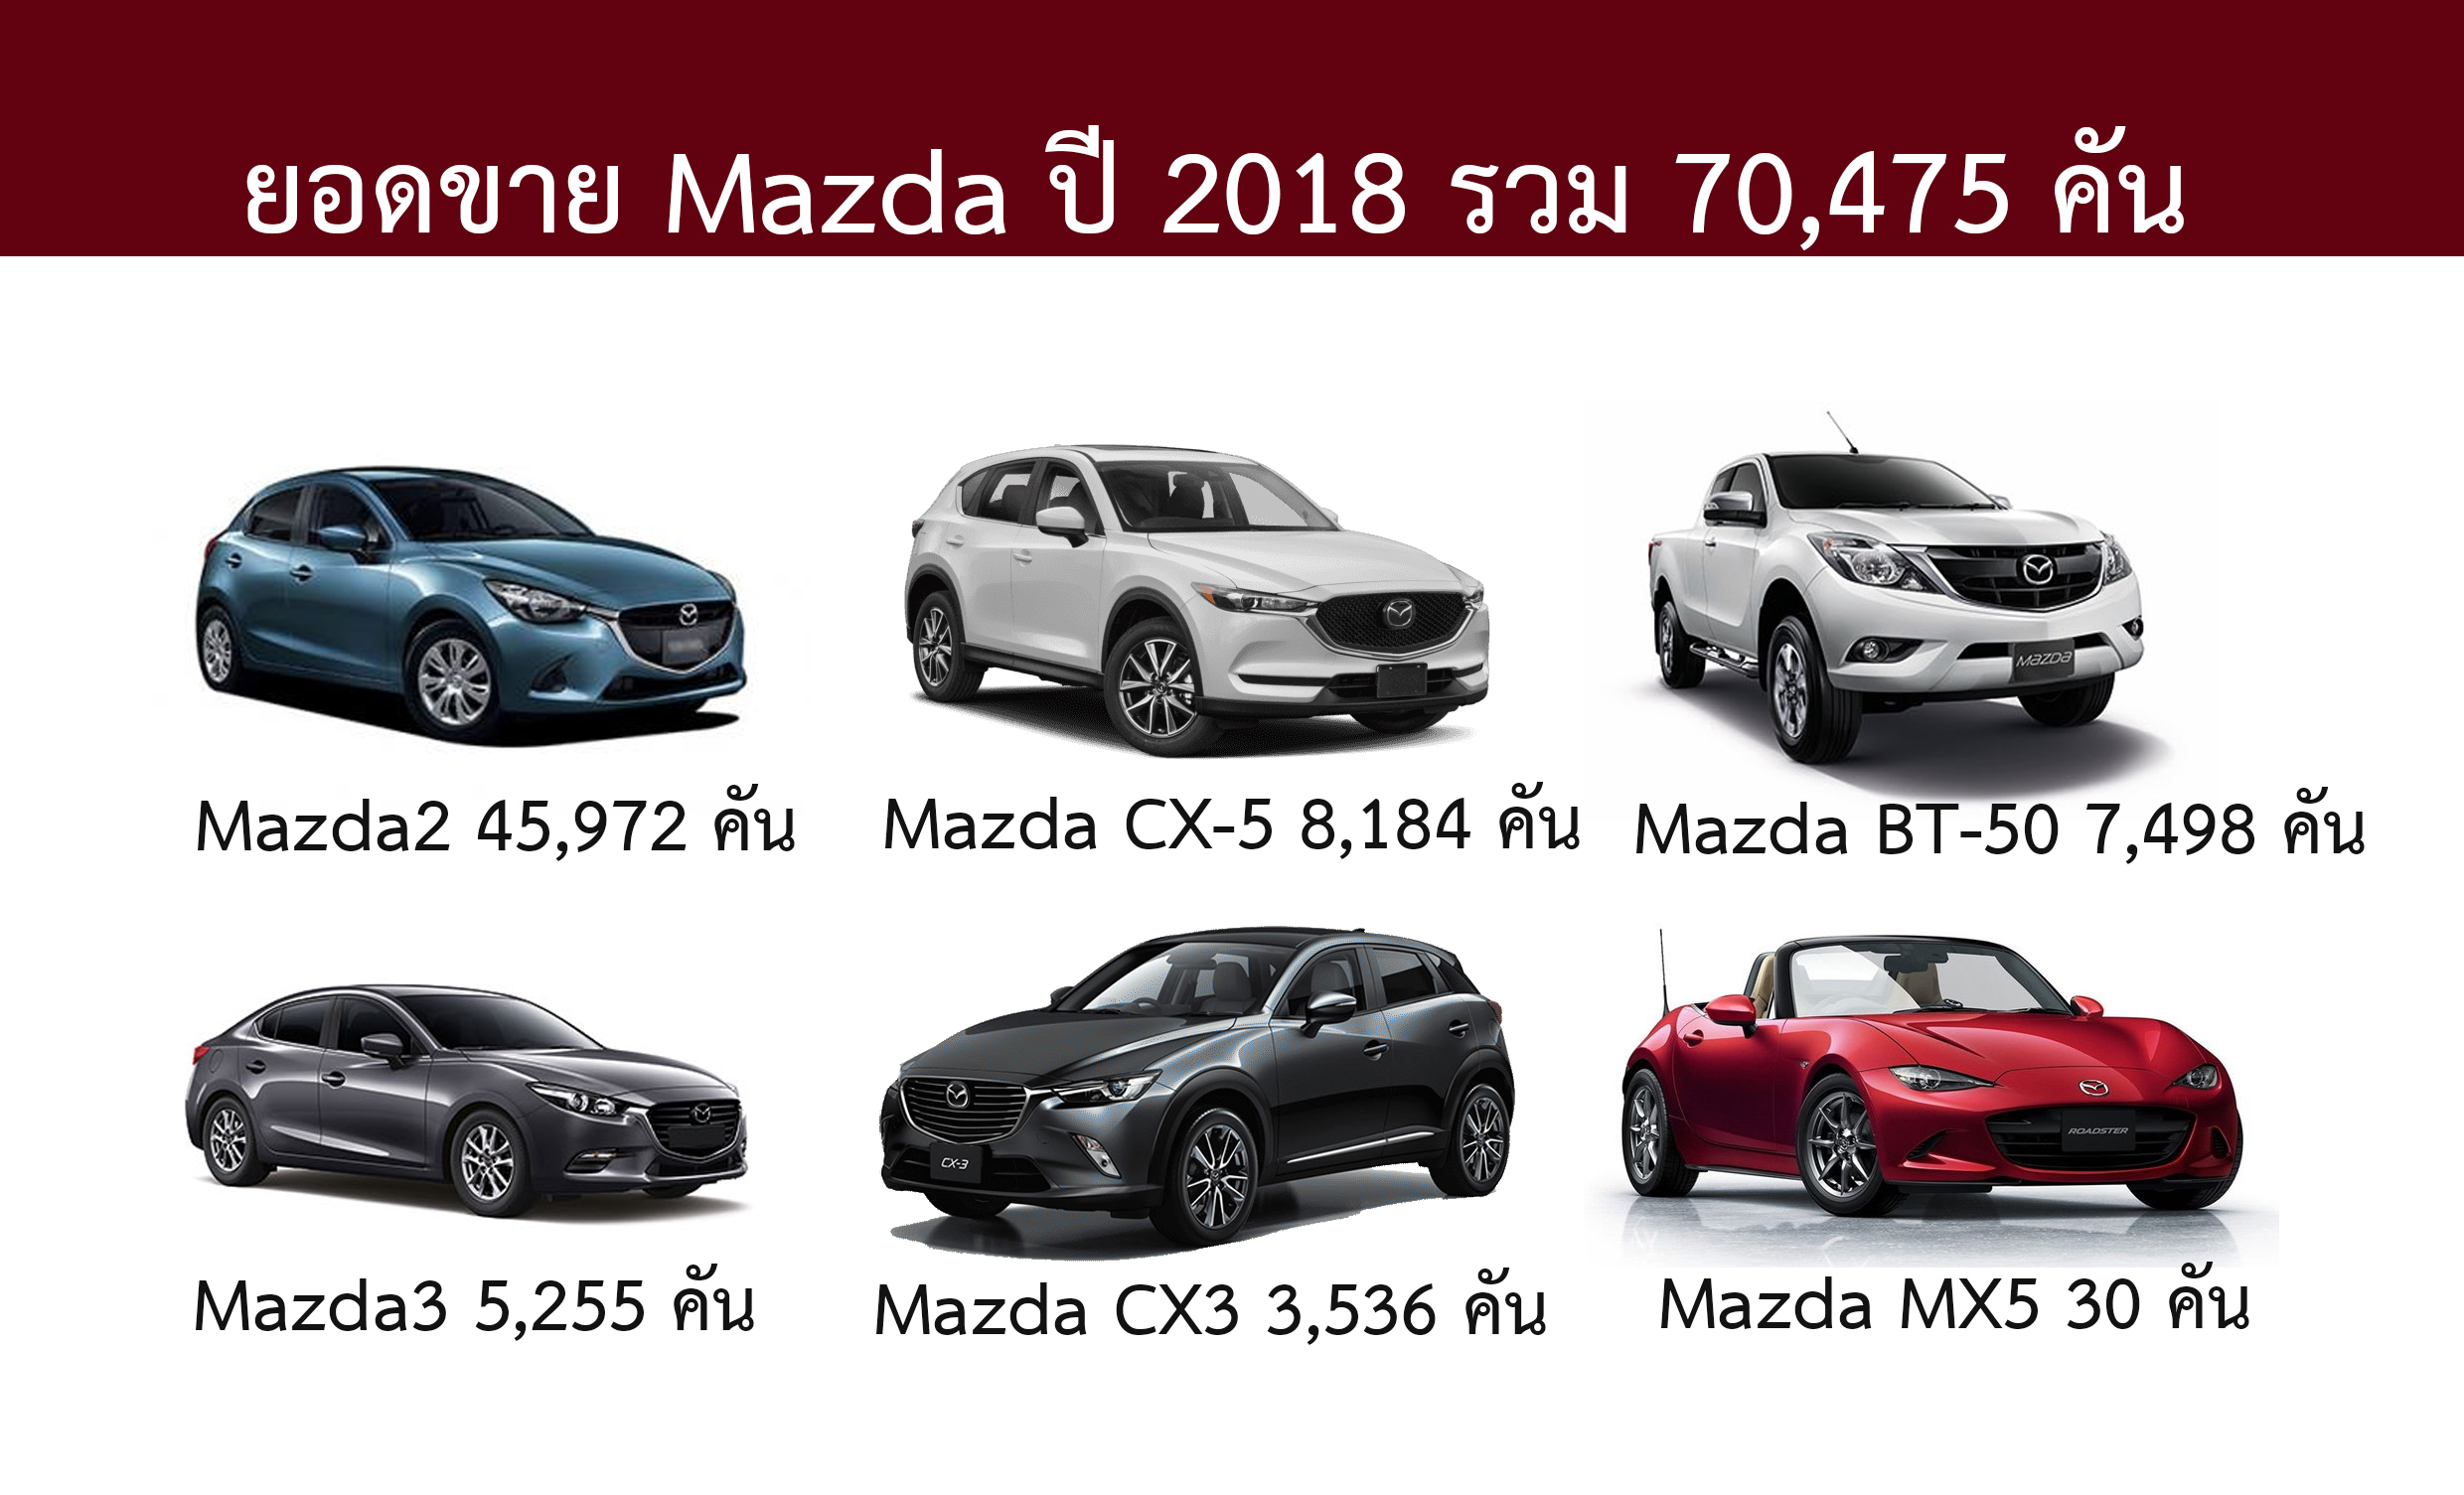 รวมยอดขาย MAZDA ปี 2018 70,475 คัน Mazda2 ขายดีมาก